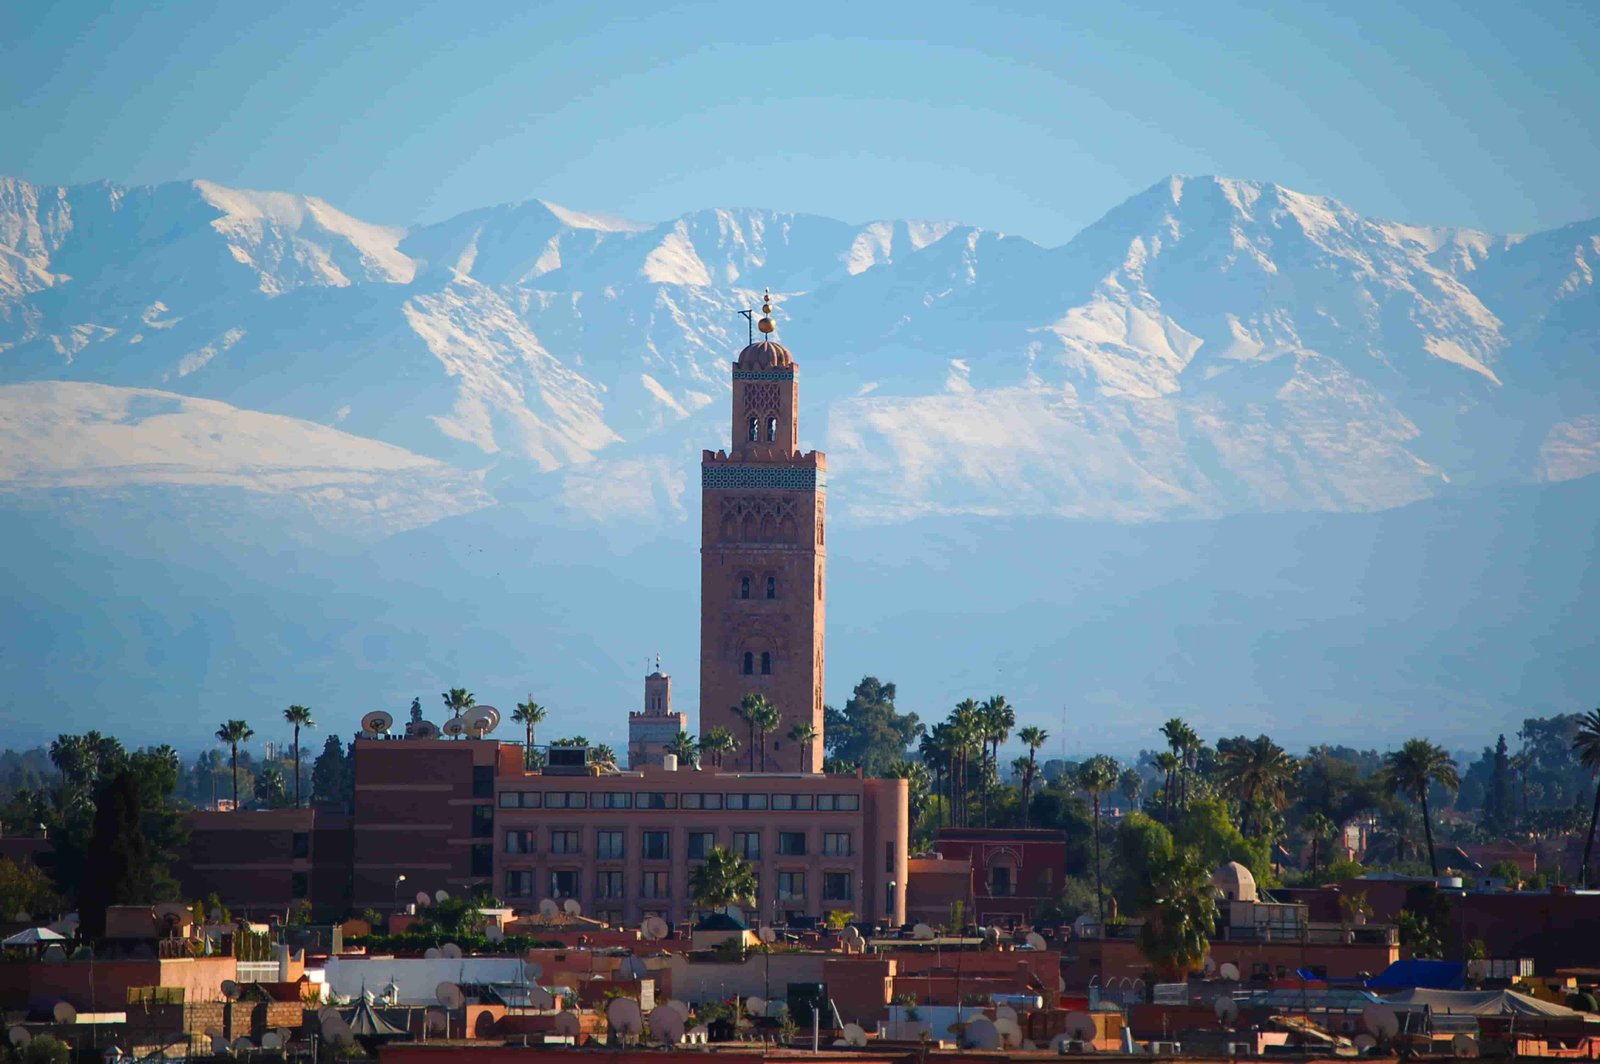 Giorno 1: Marrakech-Tizi N'tichka Pass-Ait Benhaddou-Ouarzazate-Kelaa M'gouna-Boumalne Dades.